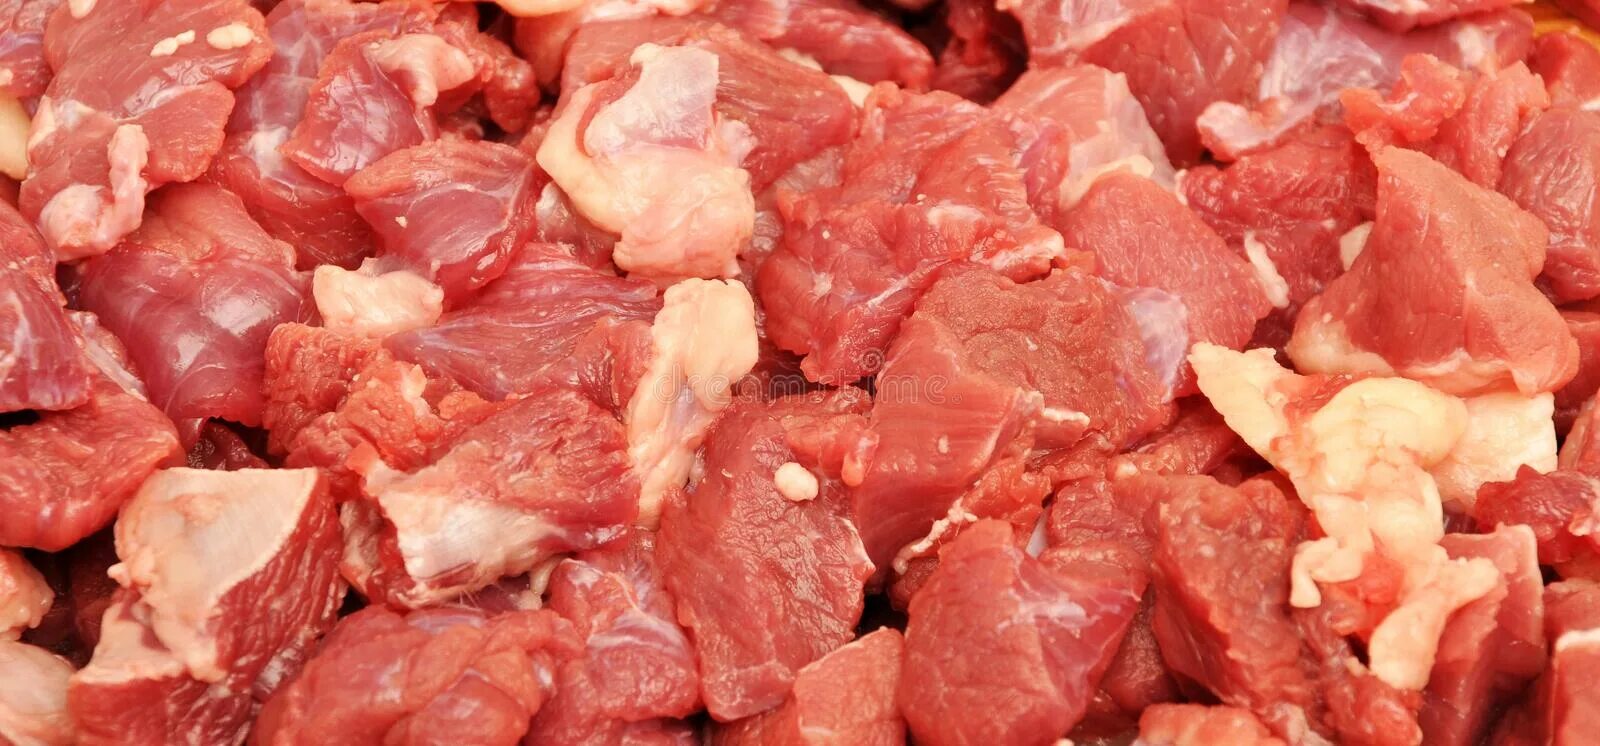 Мясо без крови видеть во. Много сырого мяса.